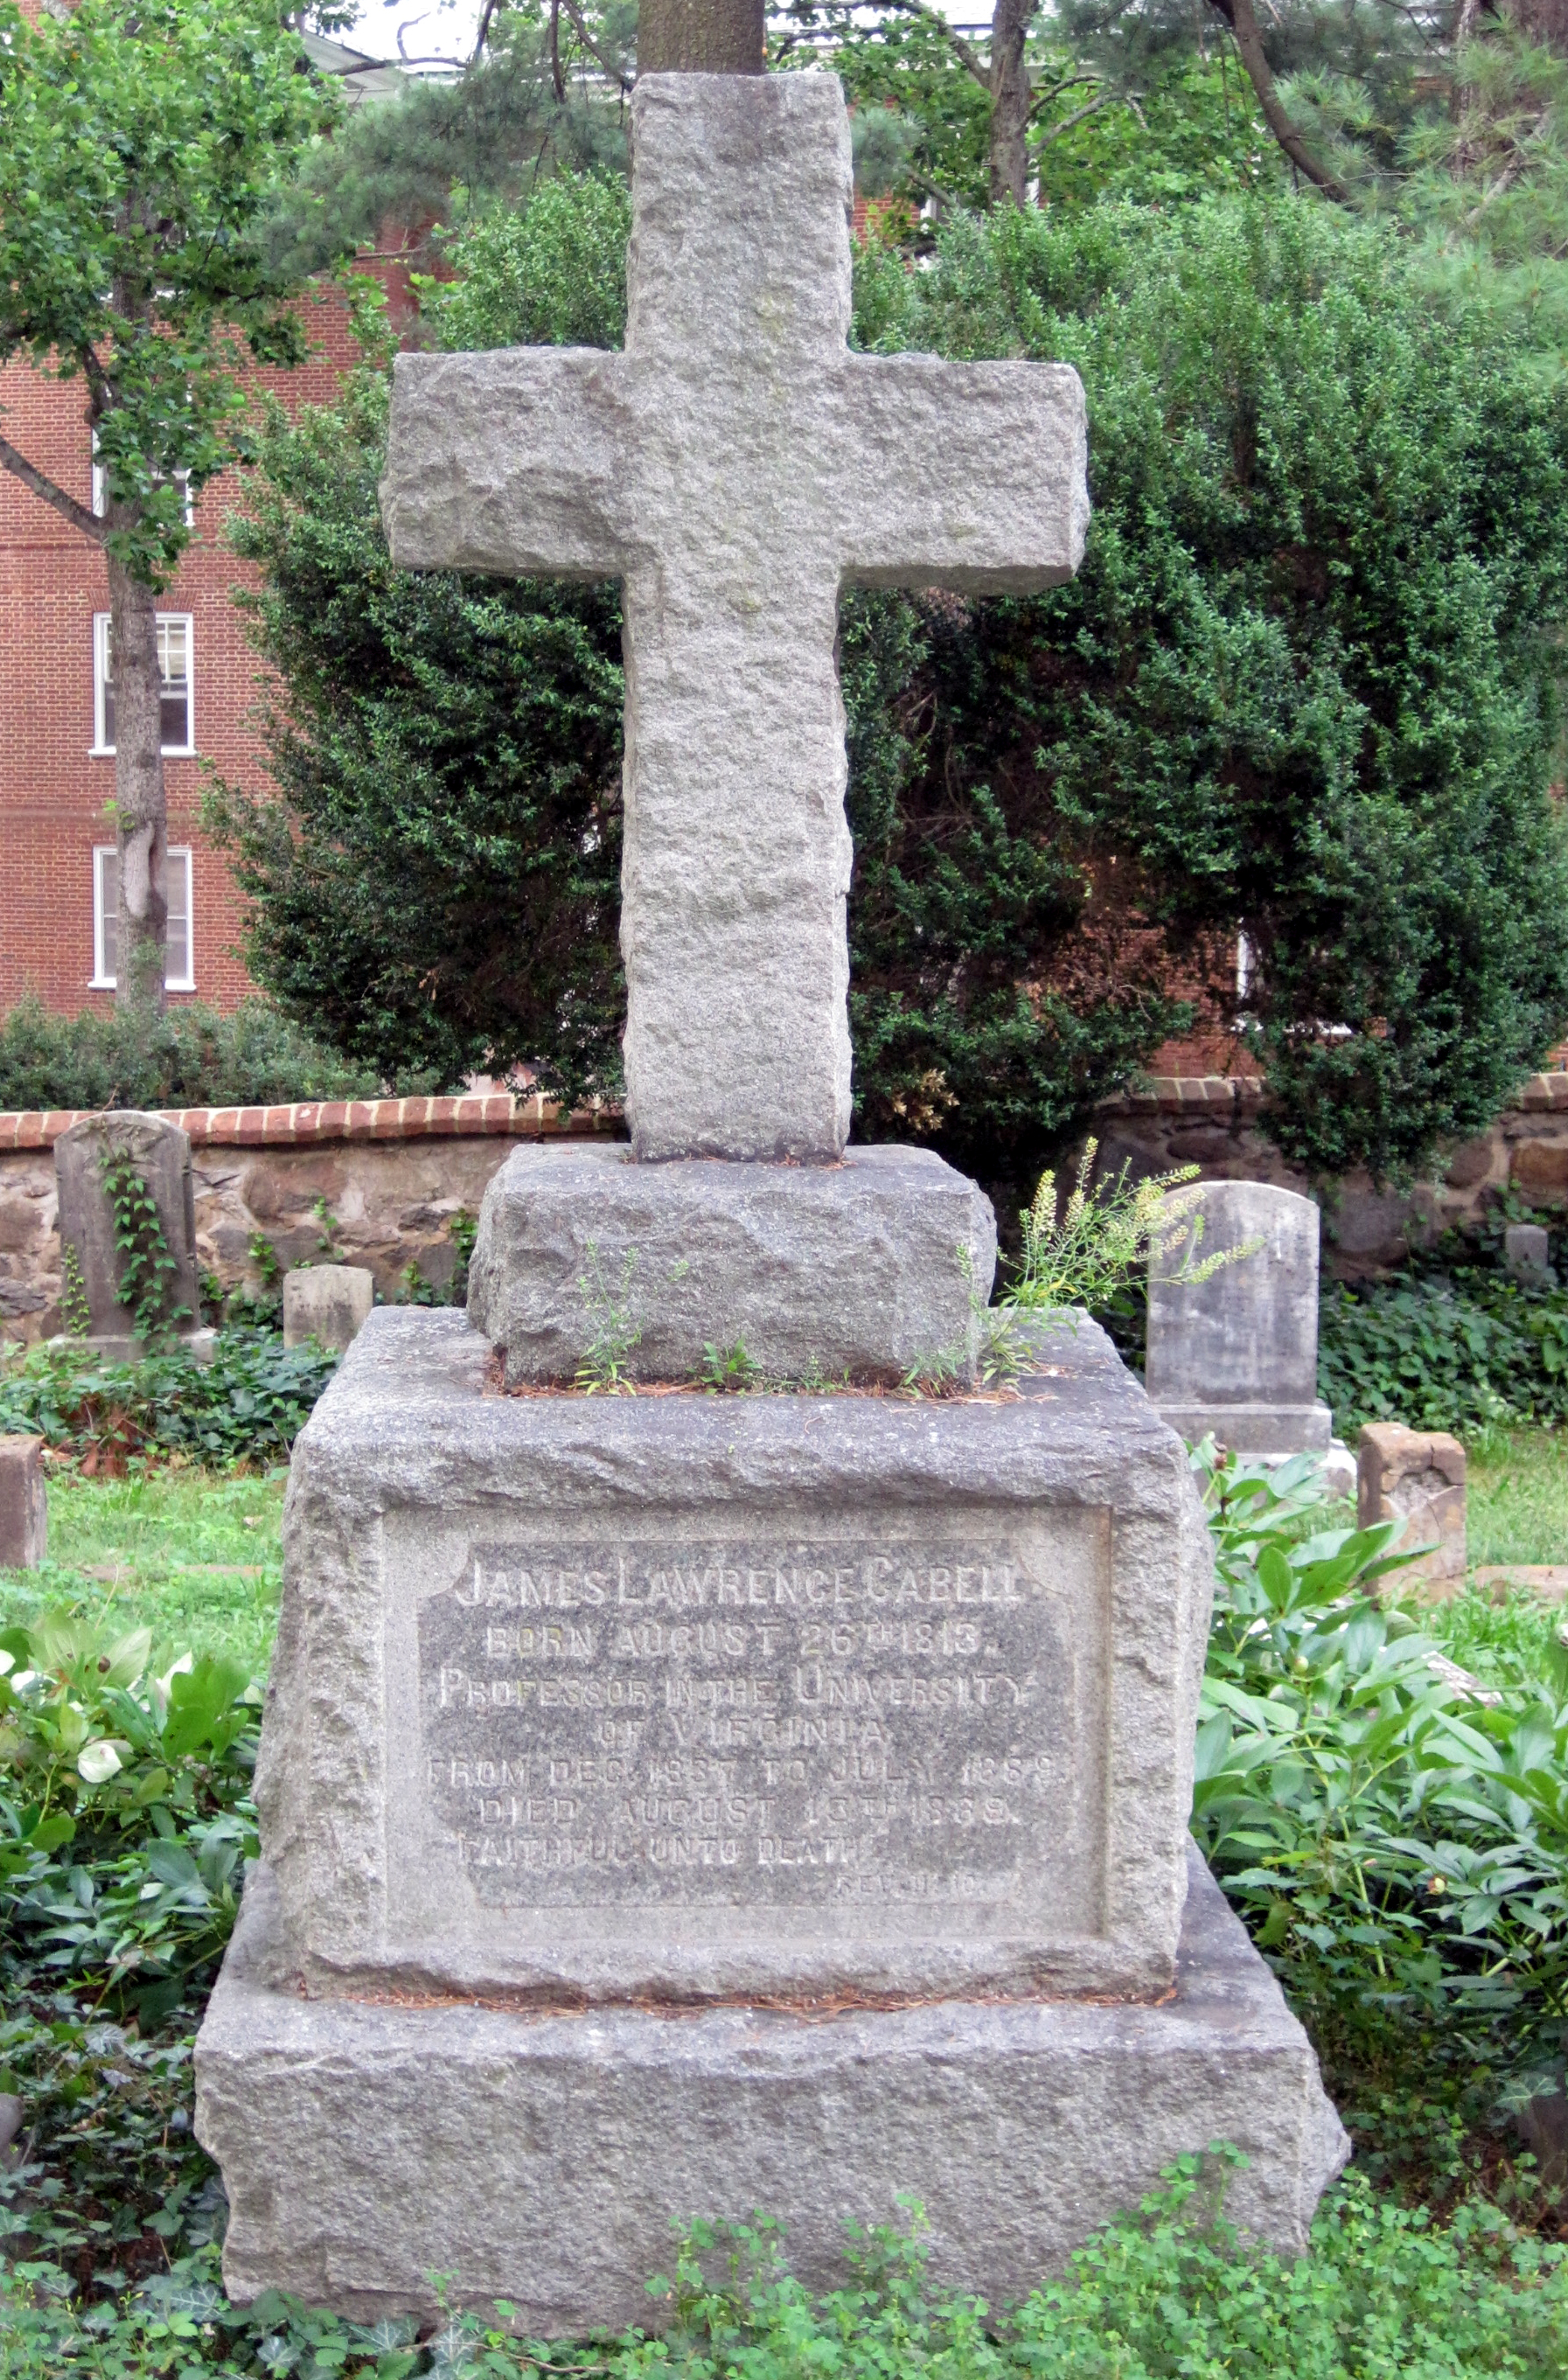 James L. Cabell grave marker